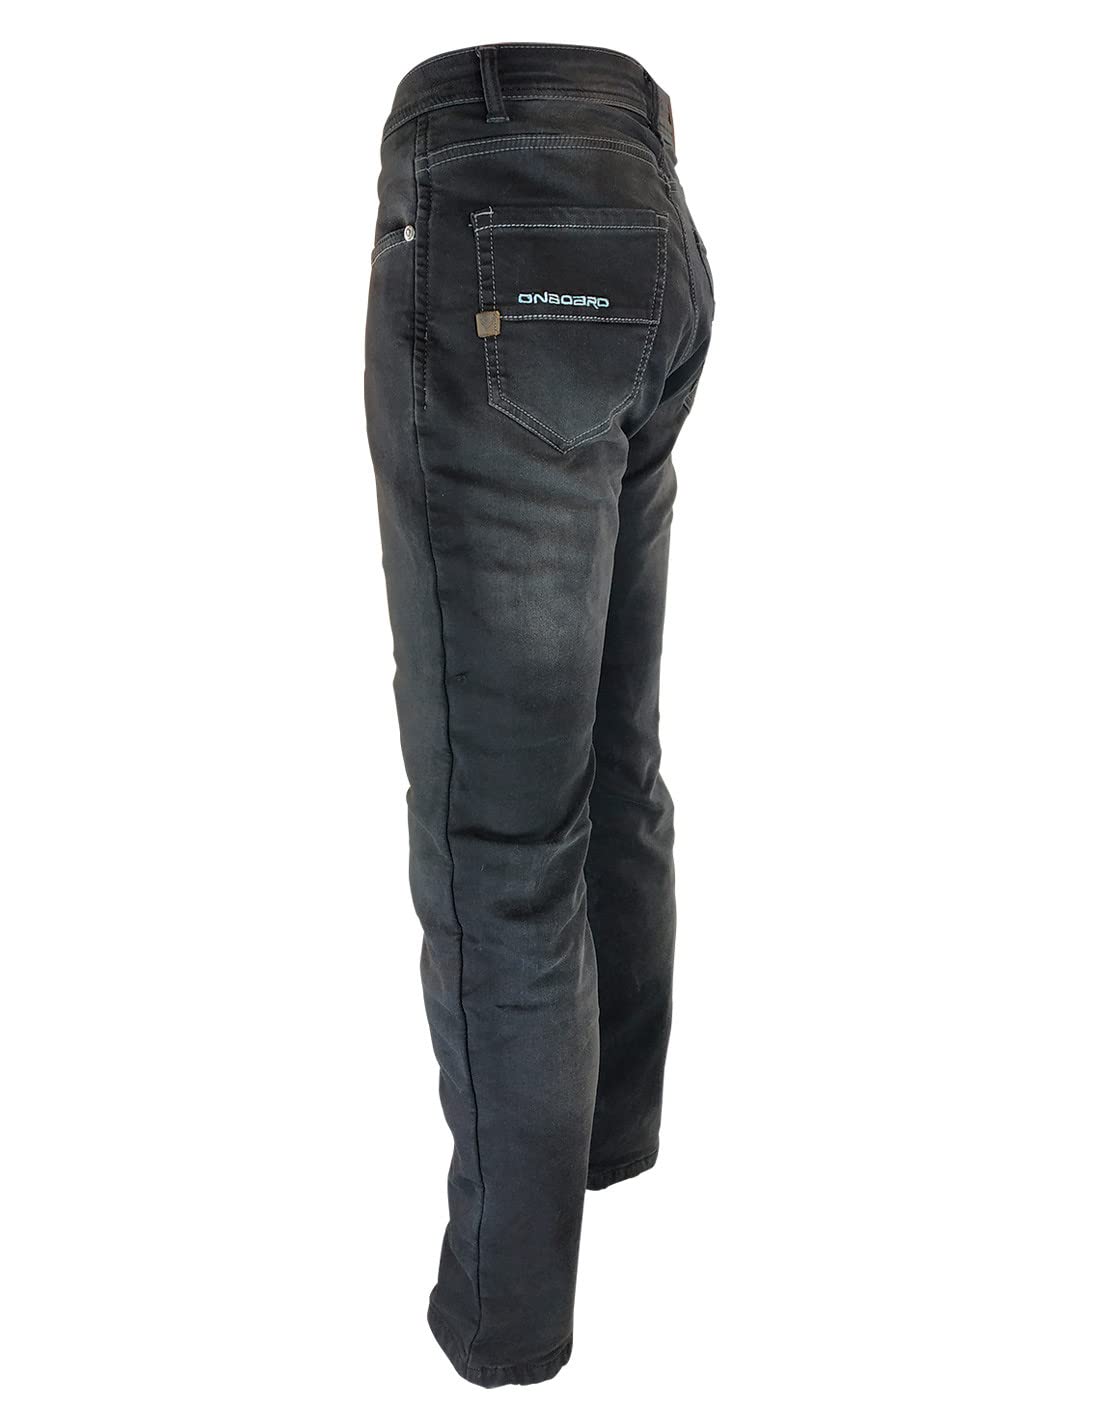 ON BOARD Concept Jeanshose mit Protektoren, Herren, 32, dunkelblau von ON BOARD